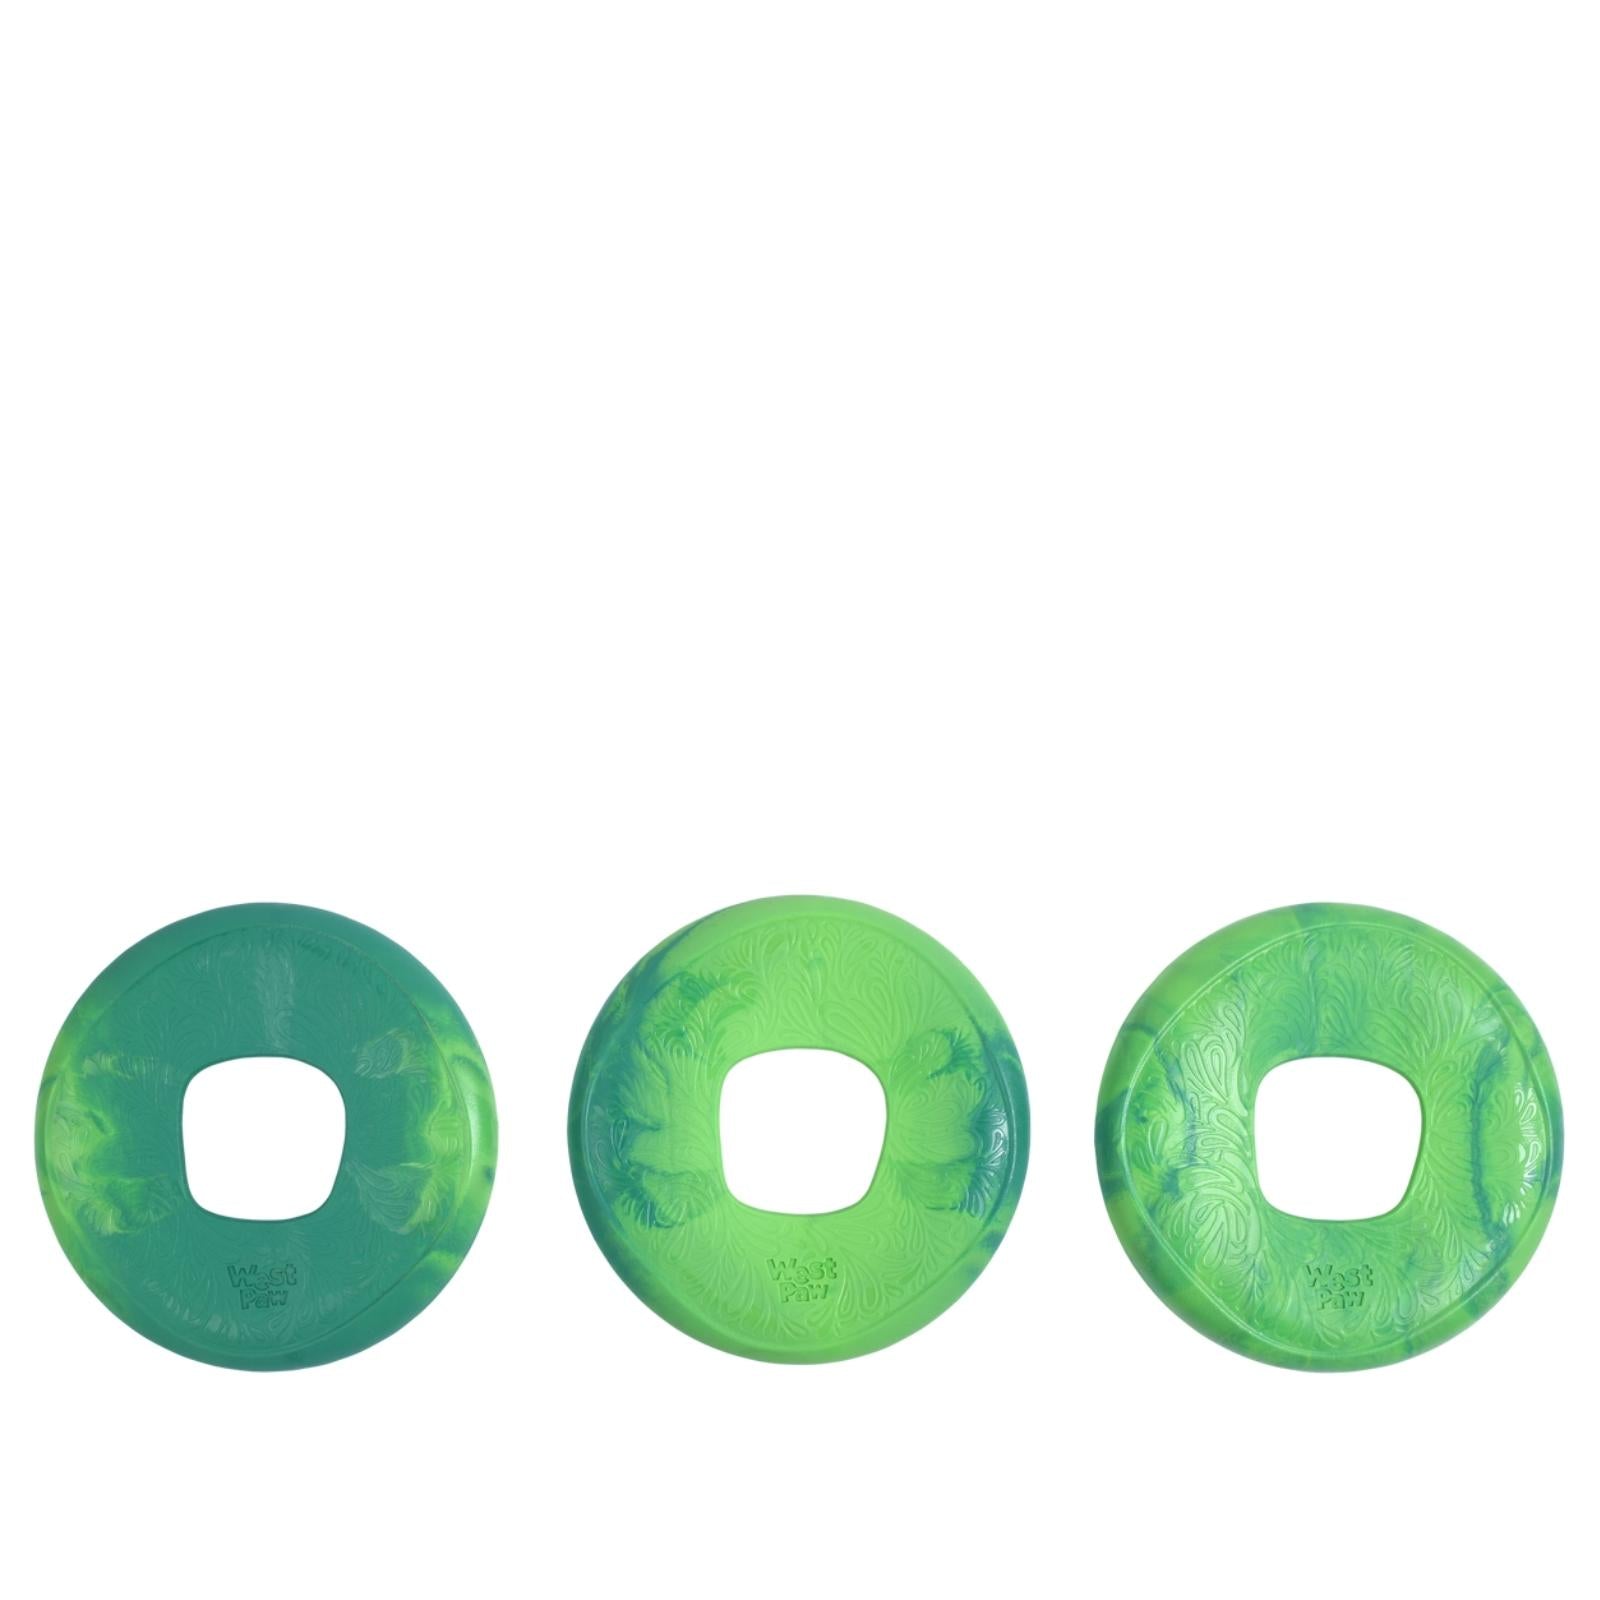 SAILZ de West Paw® color Verde Esmeralda - Frisbee para Perros